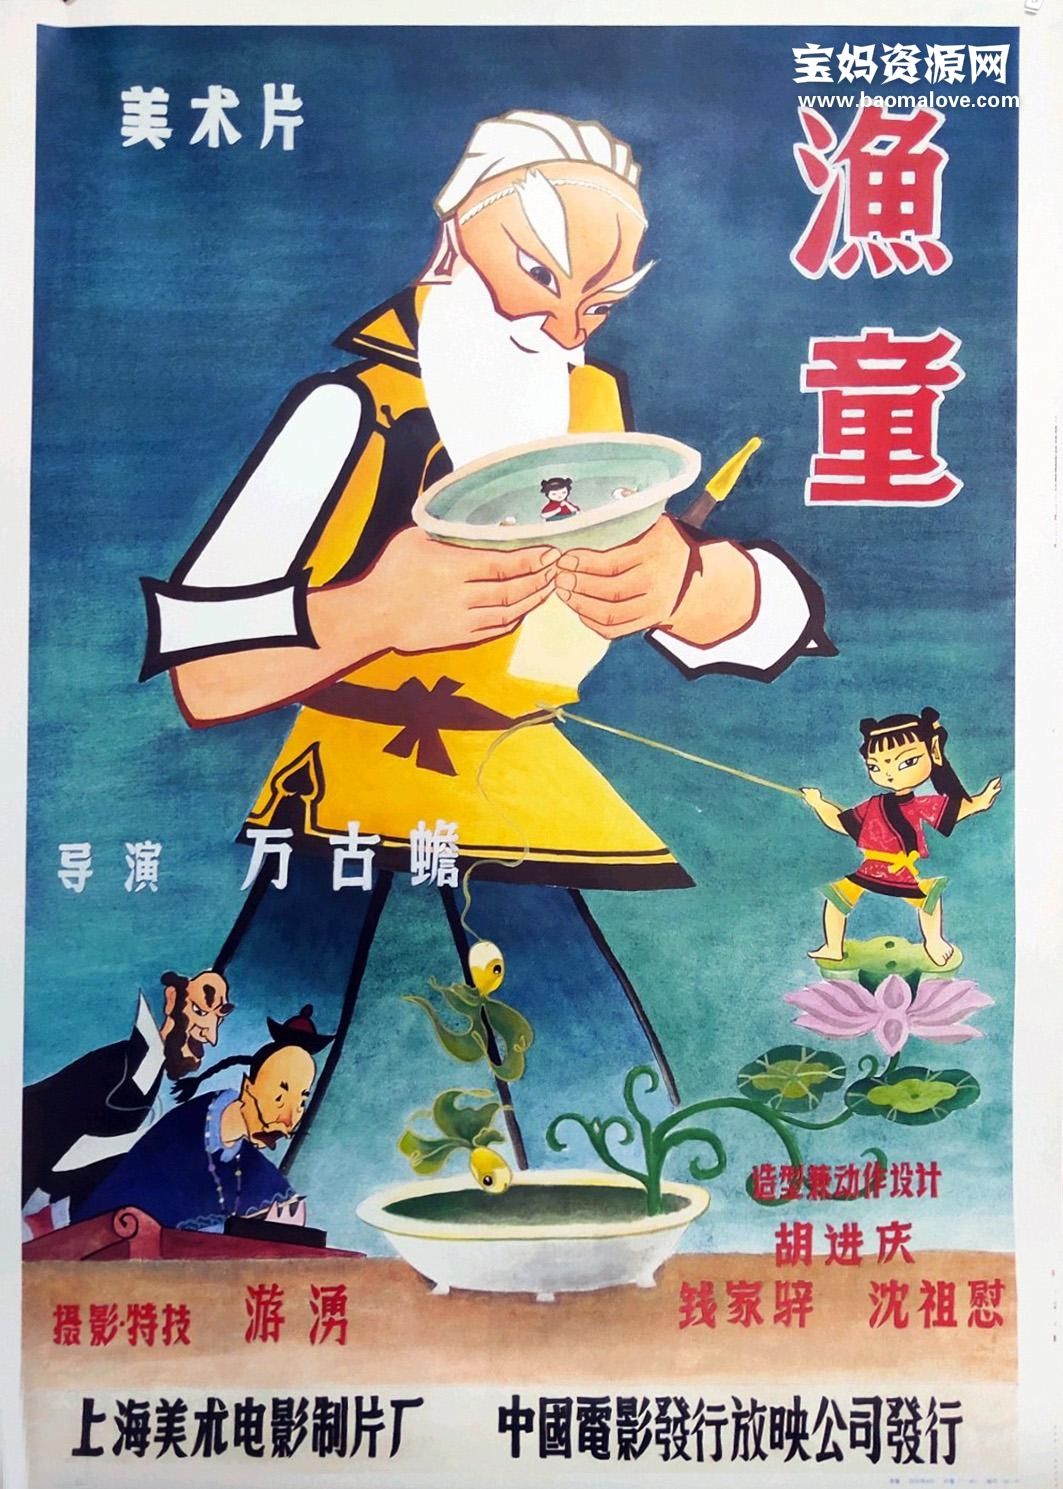 350部上海美术电影制片厂经典动画片鉴赏——渔童 (1959) – 旧时光